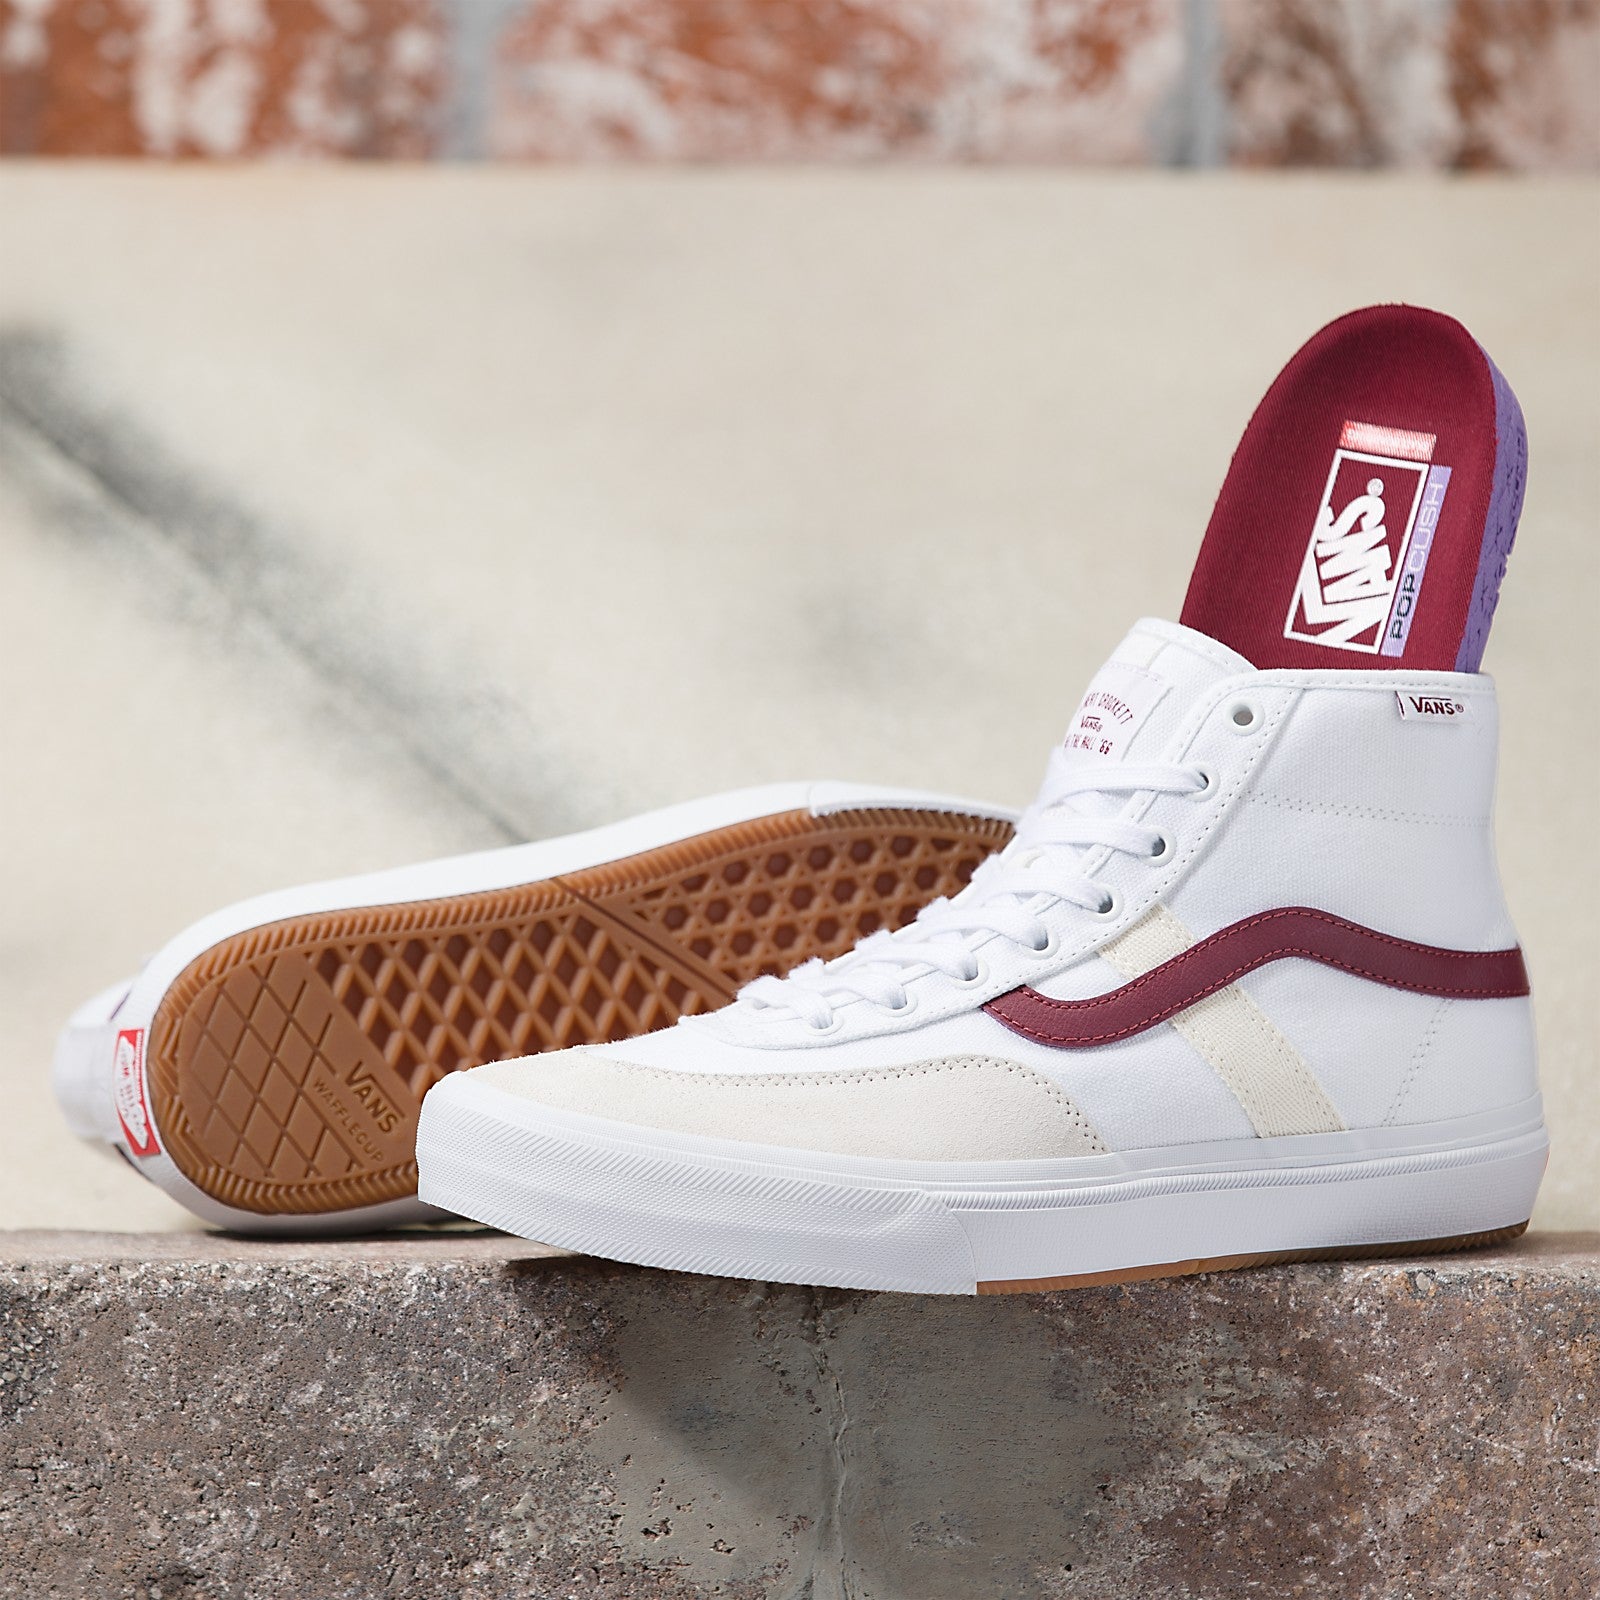 White/Red Gilbert Crockett High Vans Skateboard Shoe